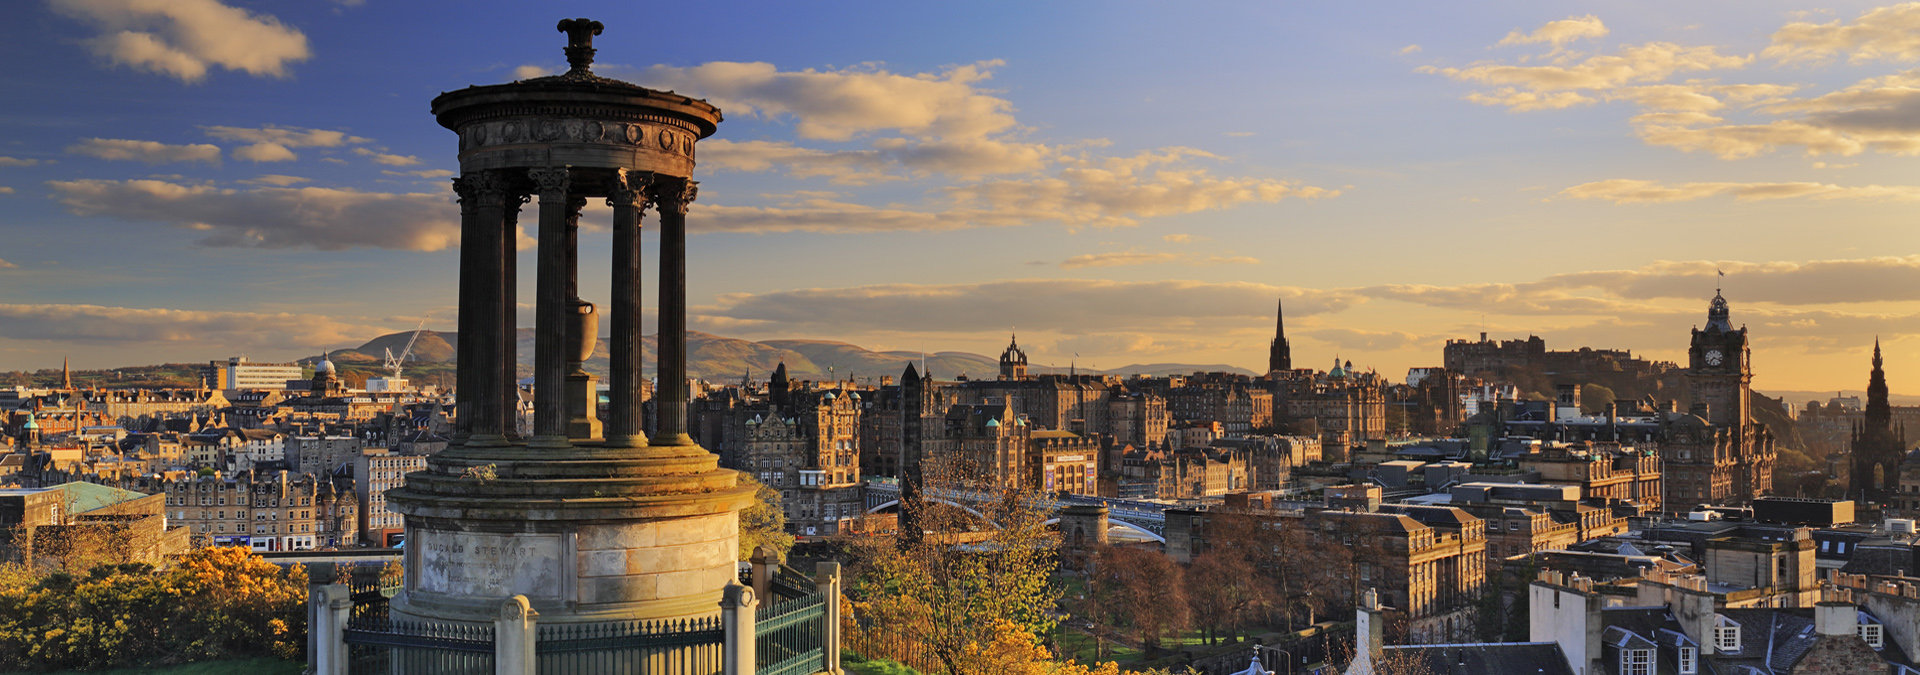 Scotland's Edinburgh Skyline